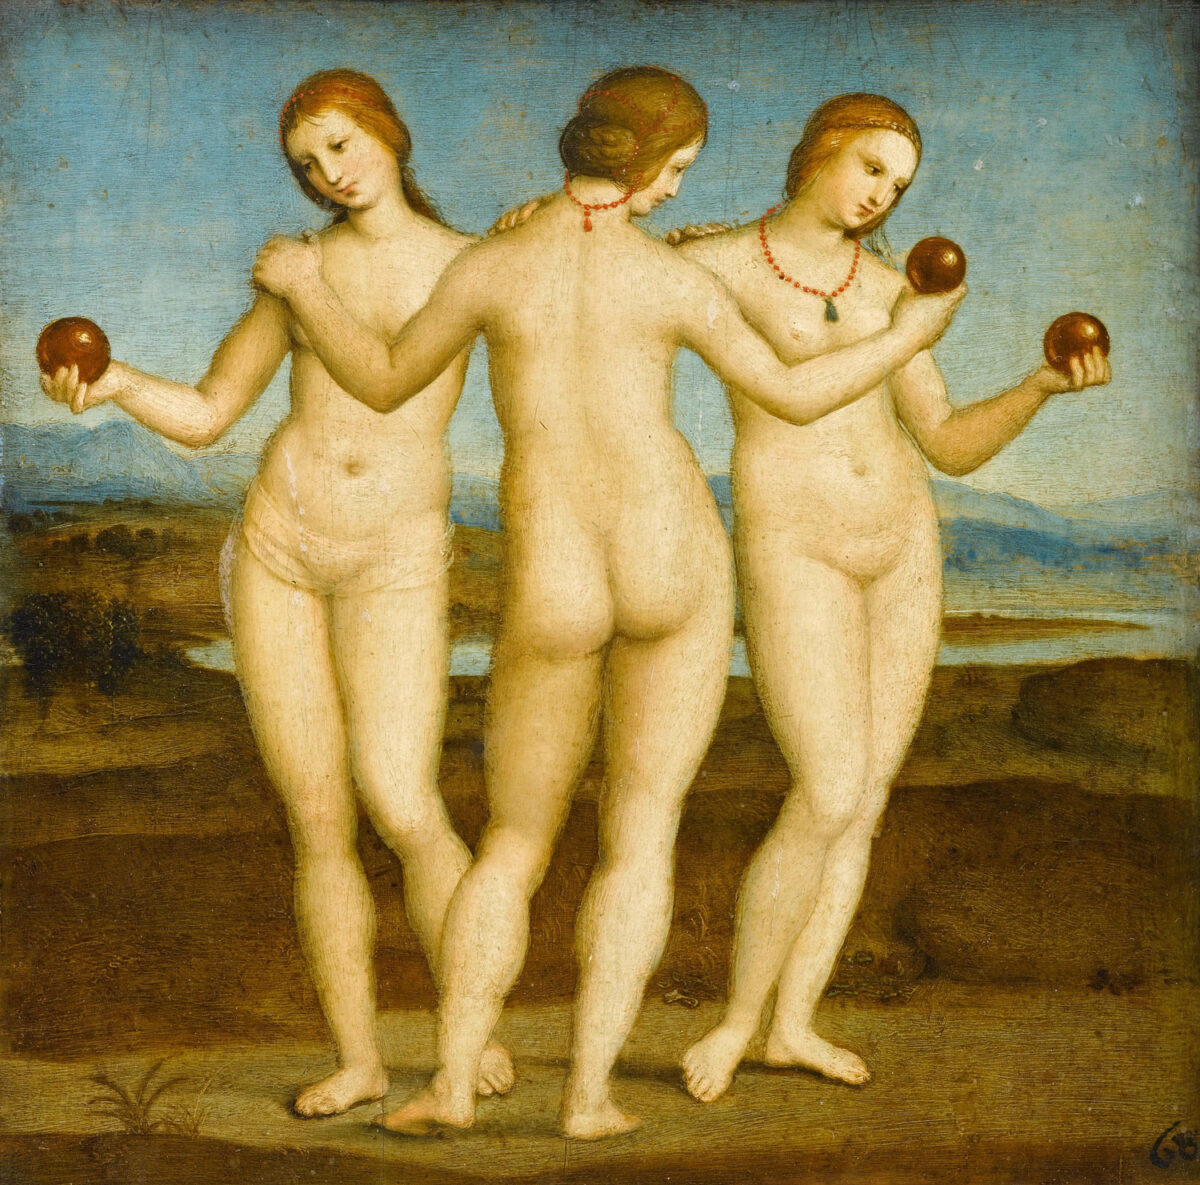 Das Gemälde Raffael Die drei Grazien ist bis heute rätselhaft, denn es lässt sich nicht ergründen welche Bedeutung die Kugeln in den Händen der Grazien haben sollen. Theorien gehen davon aus, dass eine der Damen ursprünglich einen Apfel in der Hand hielt.